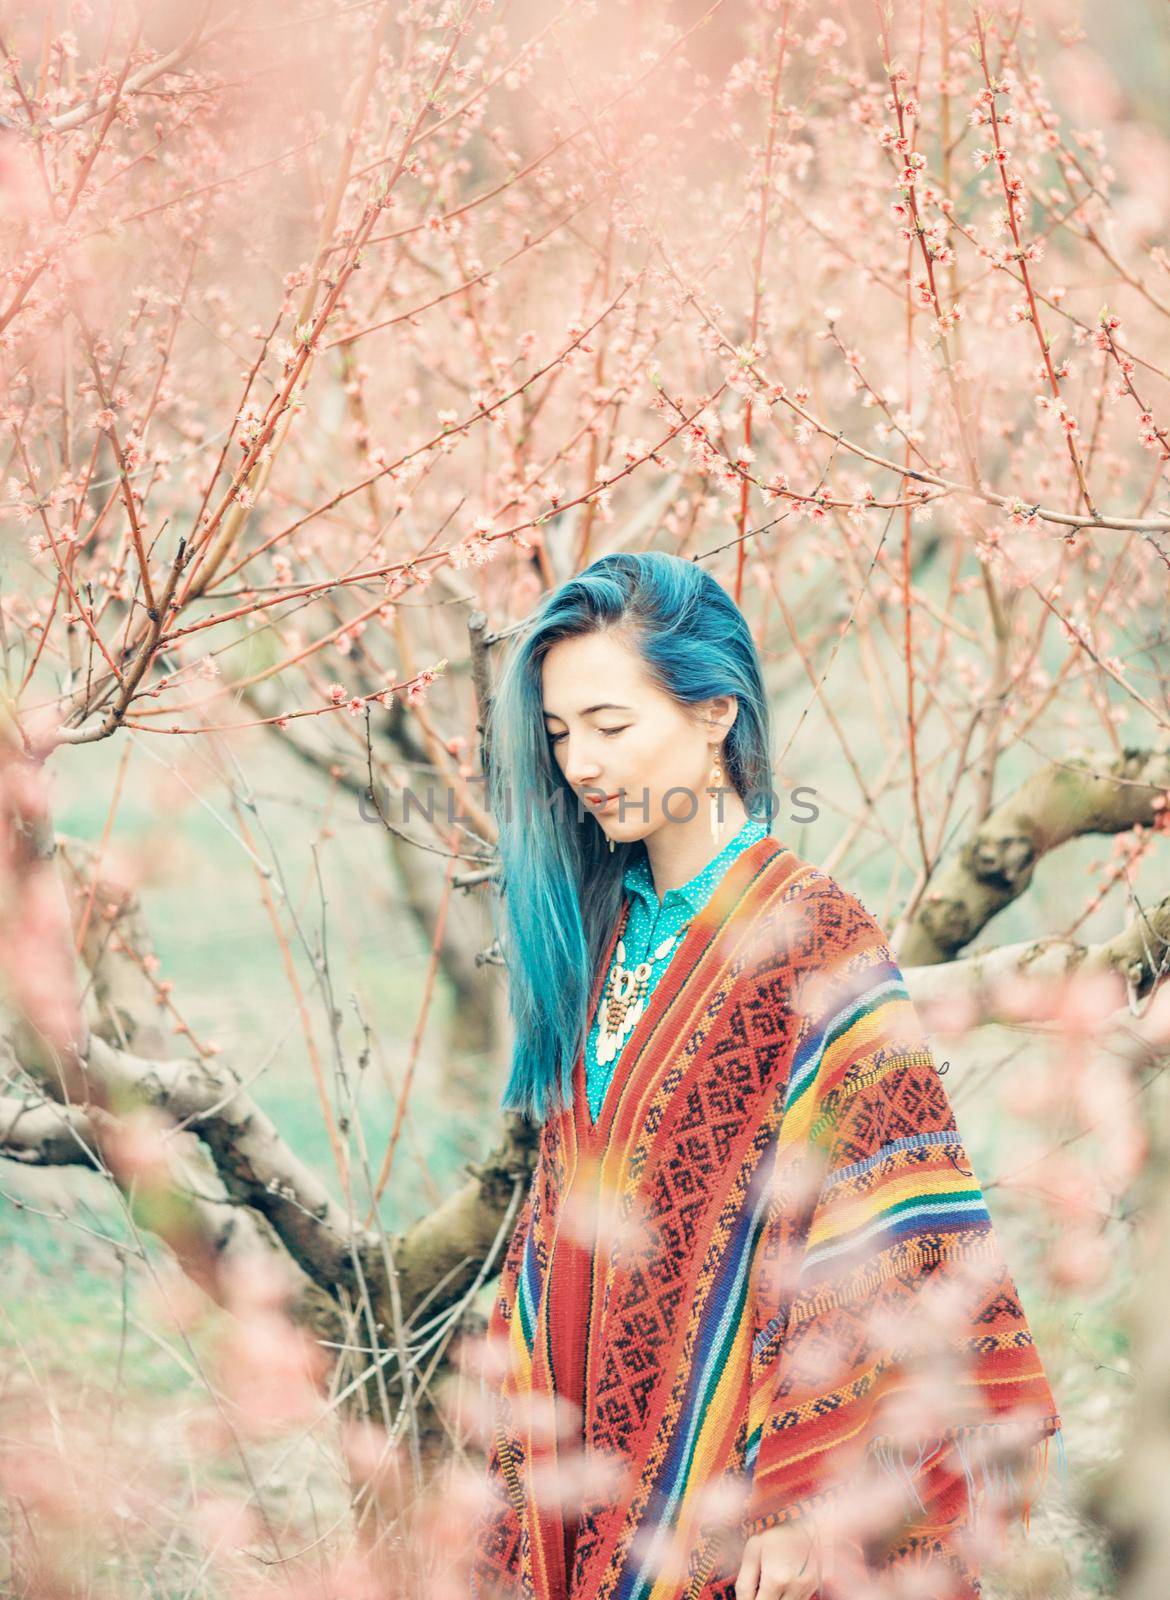 Beautiful woman walking among blooming trees. by alexAleksei